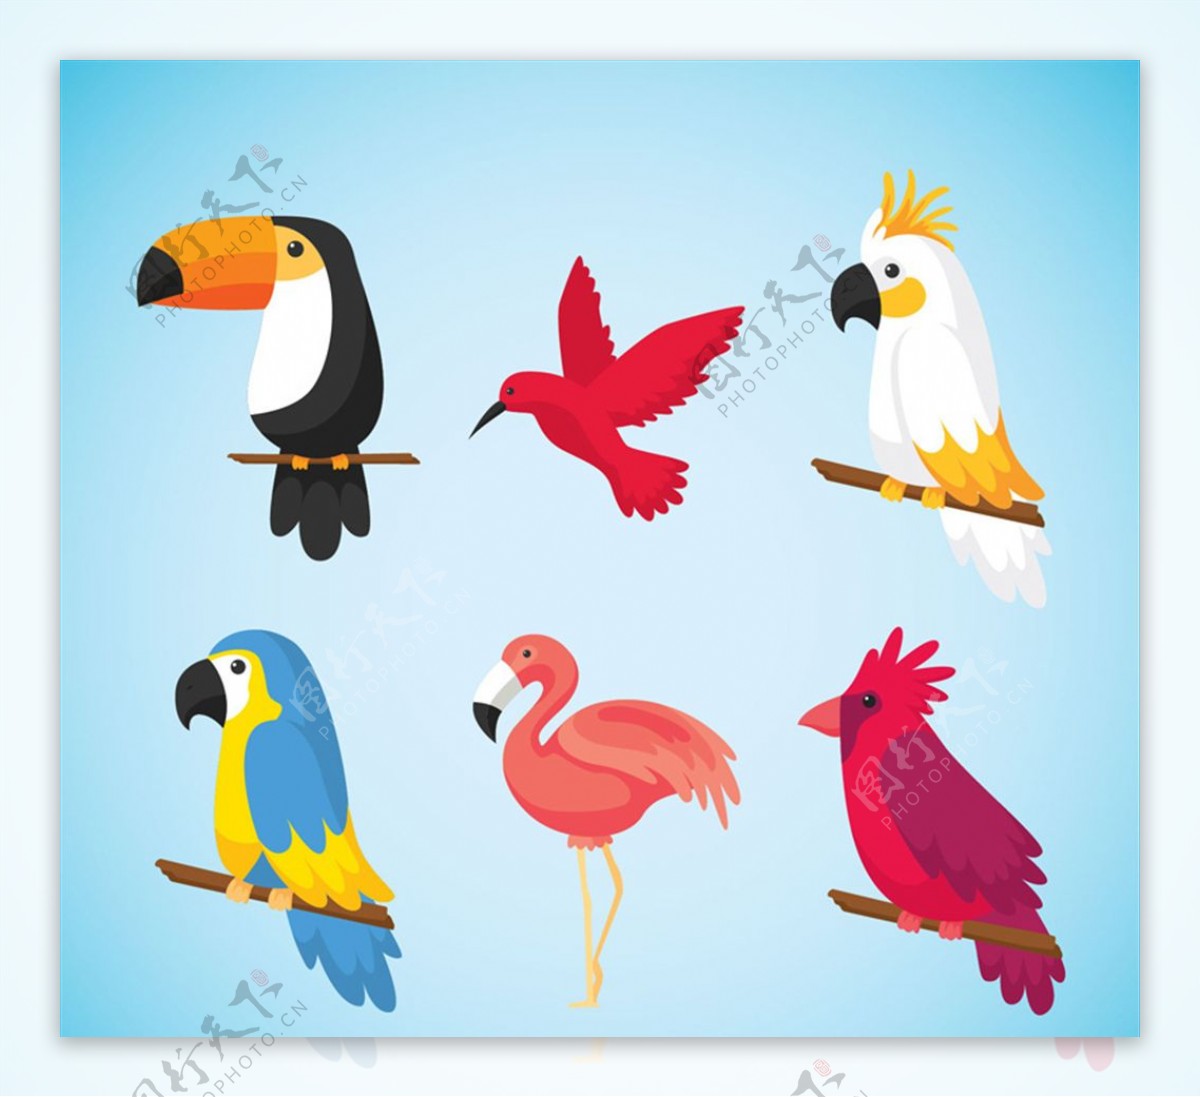 6款彩色卡通鸟类矢量素材